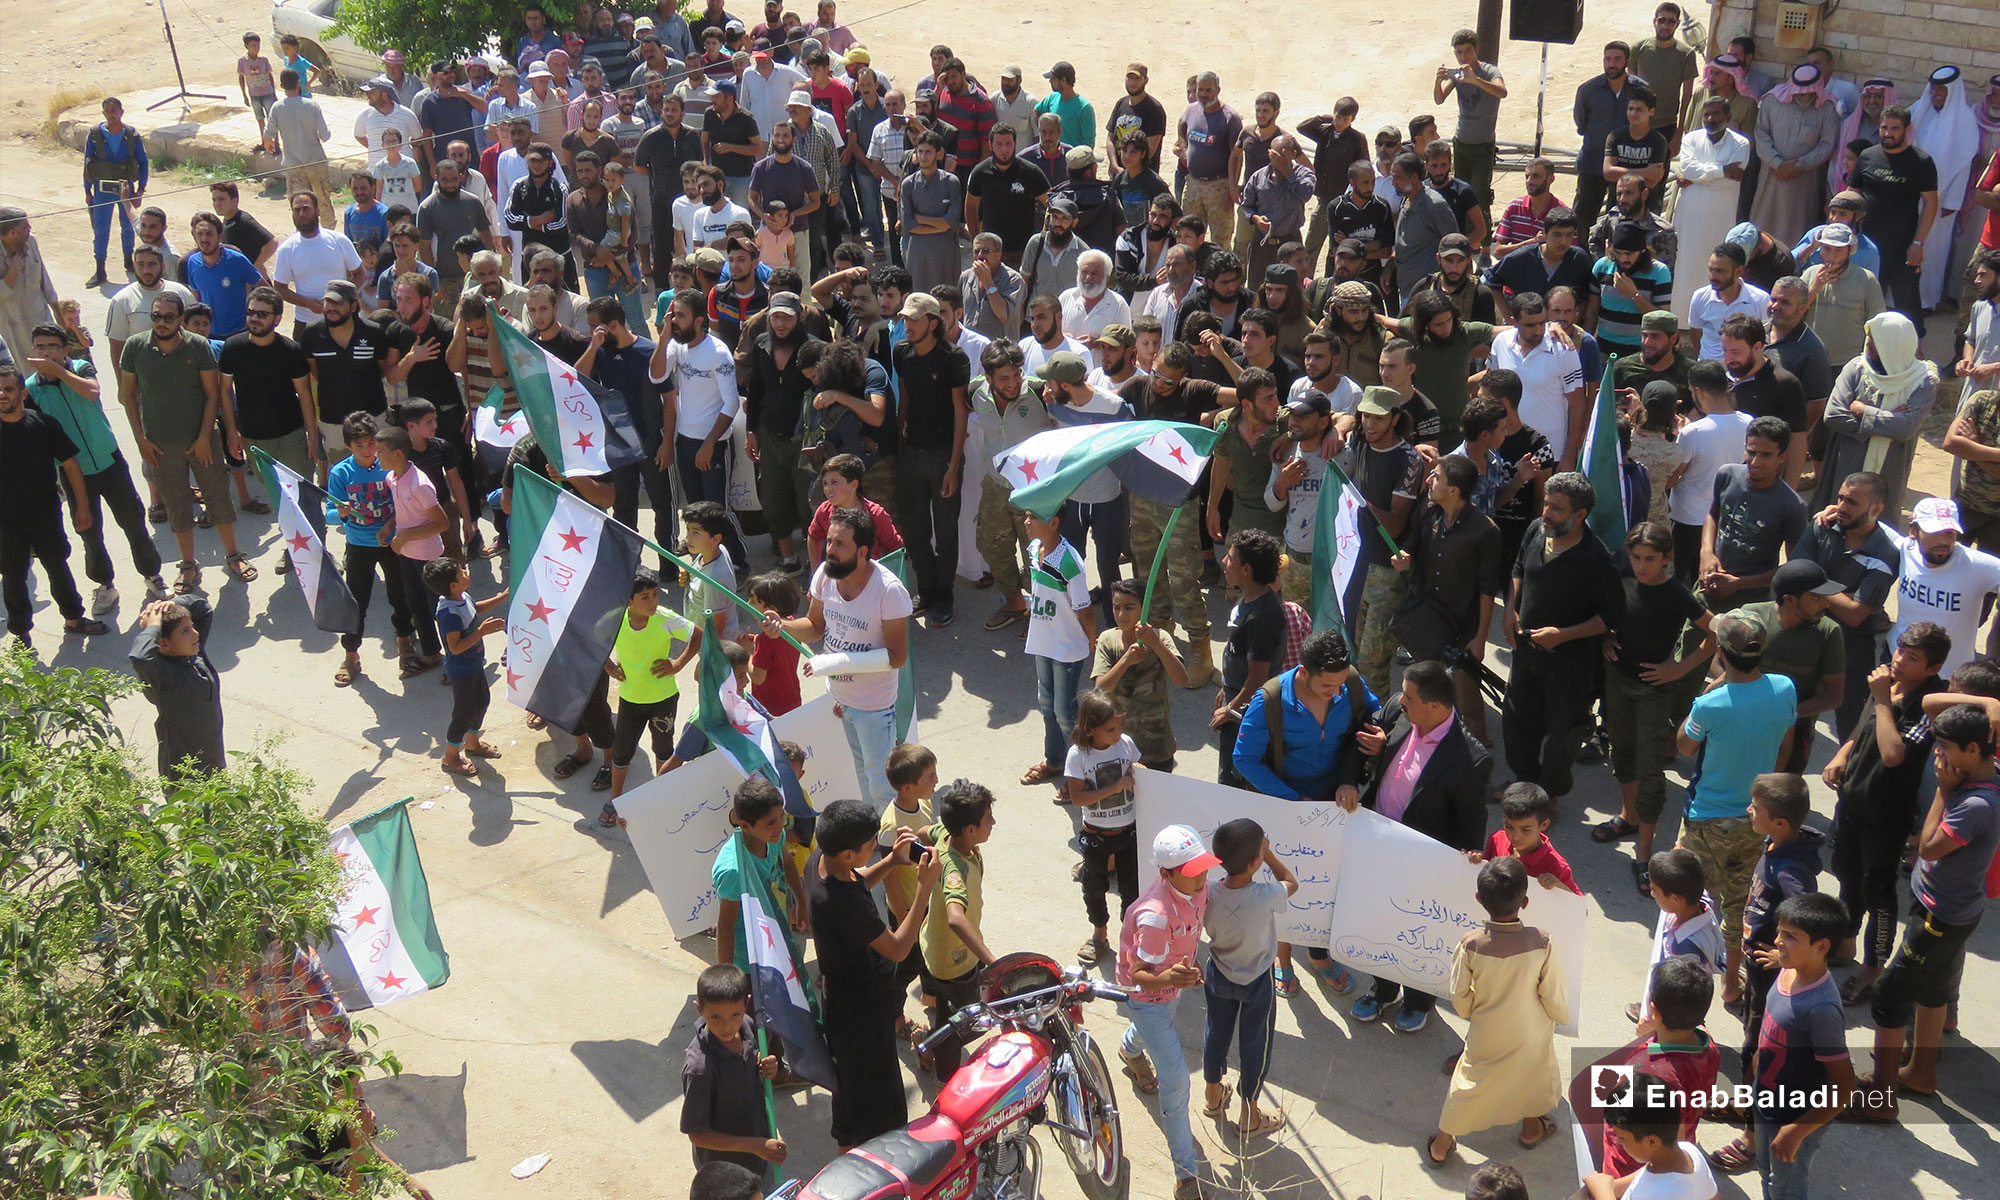 مظاهرات تطالب بتجديد الثورة والإفراج عن المعتقلين في مدينة عفرين - 21 من أيلول 2018 (عنب بلدي)